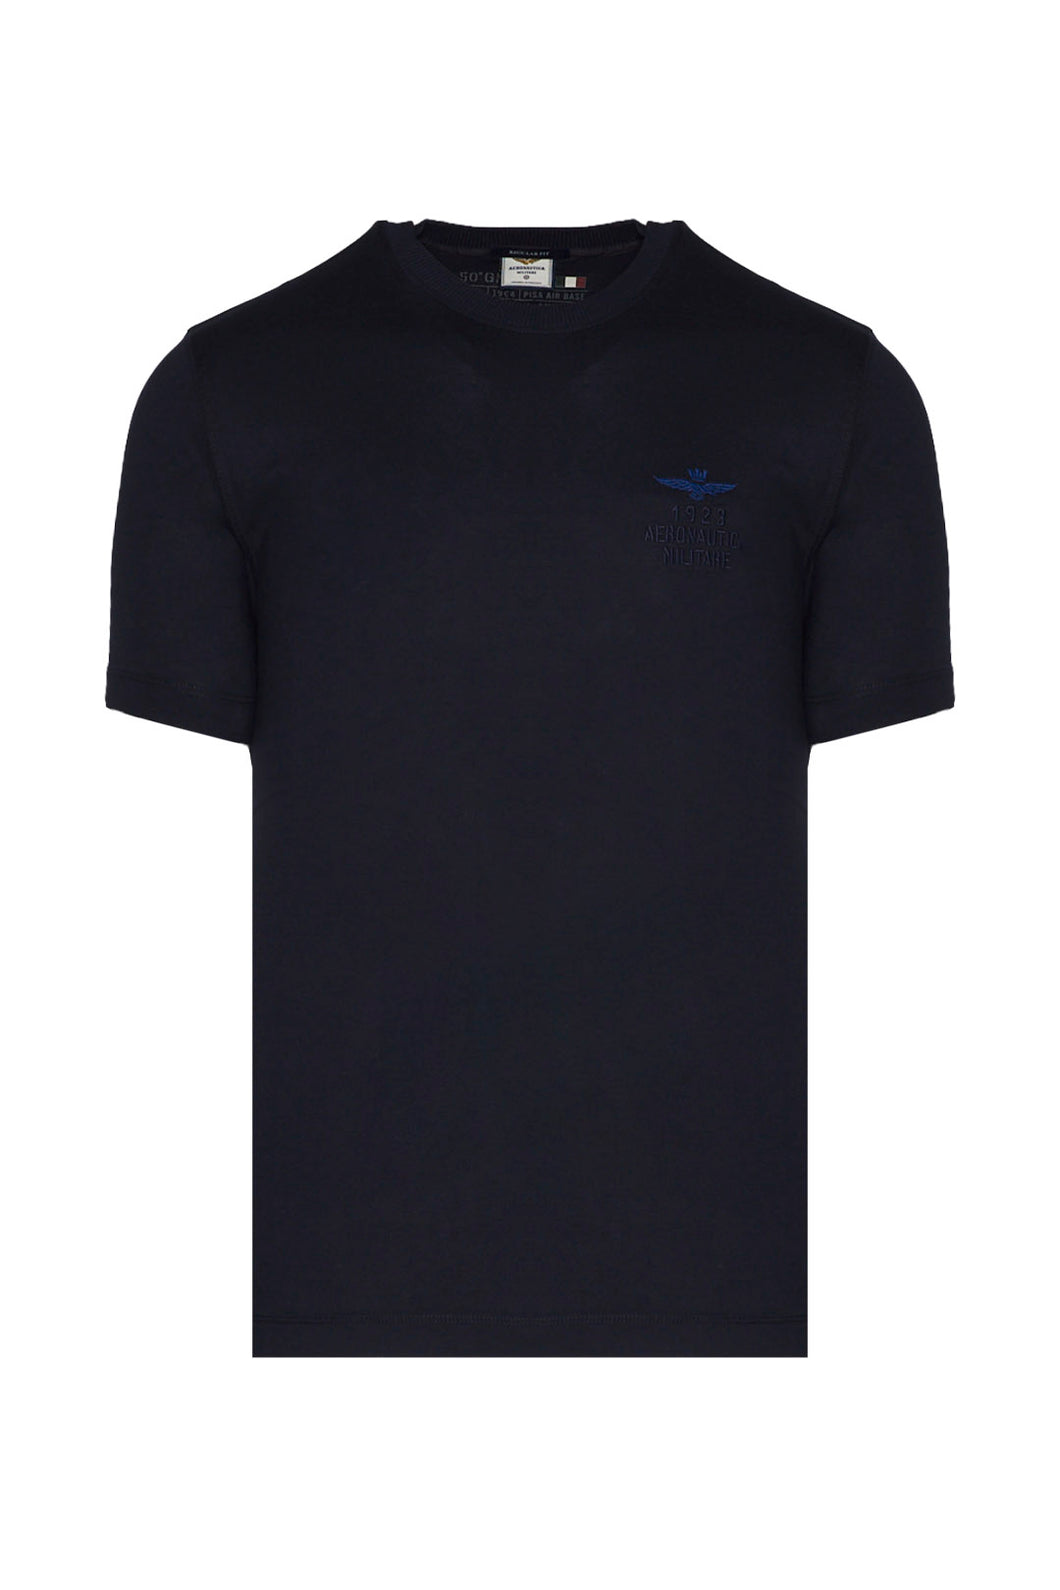 Aeronautica Militare t-shirt uomo blu manica corta